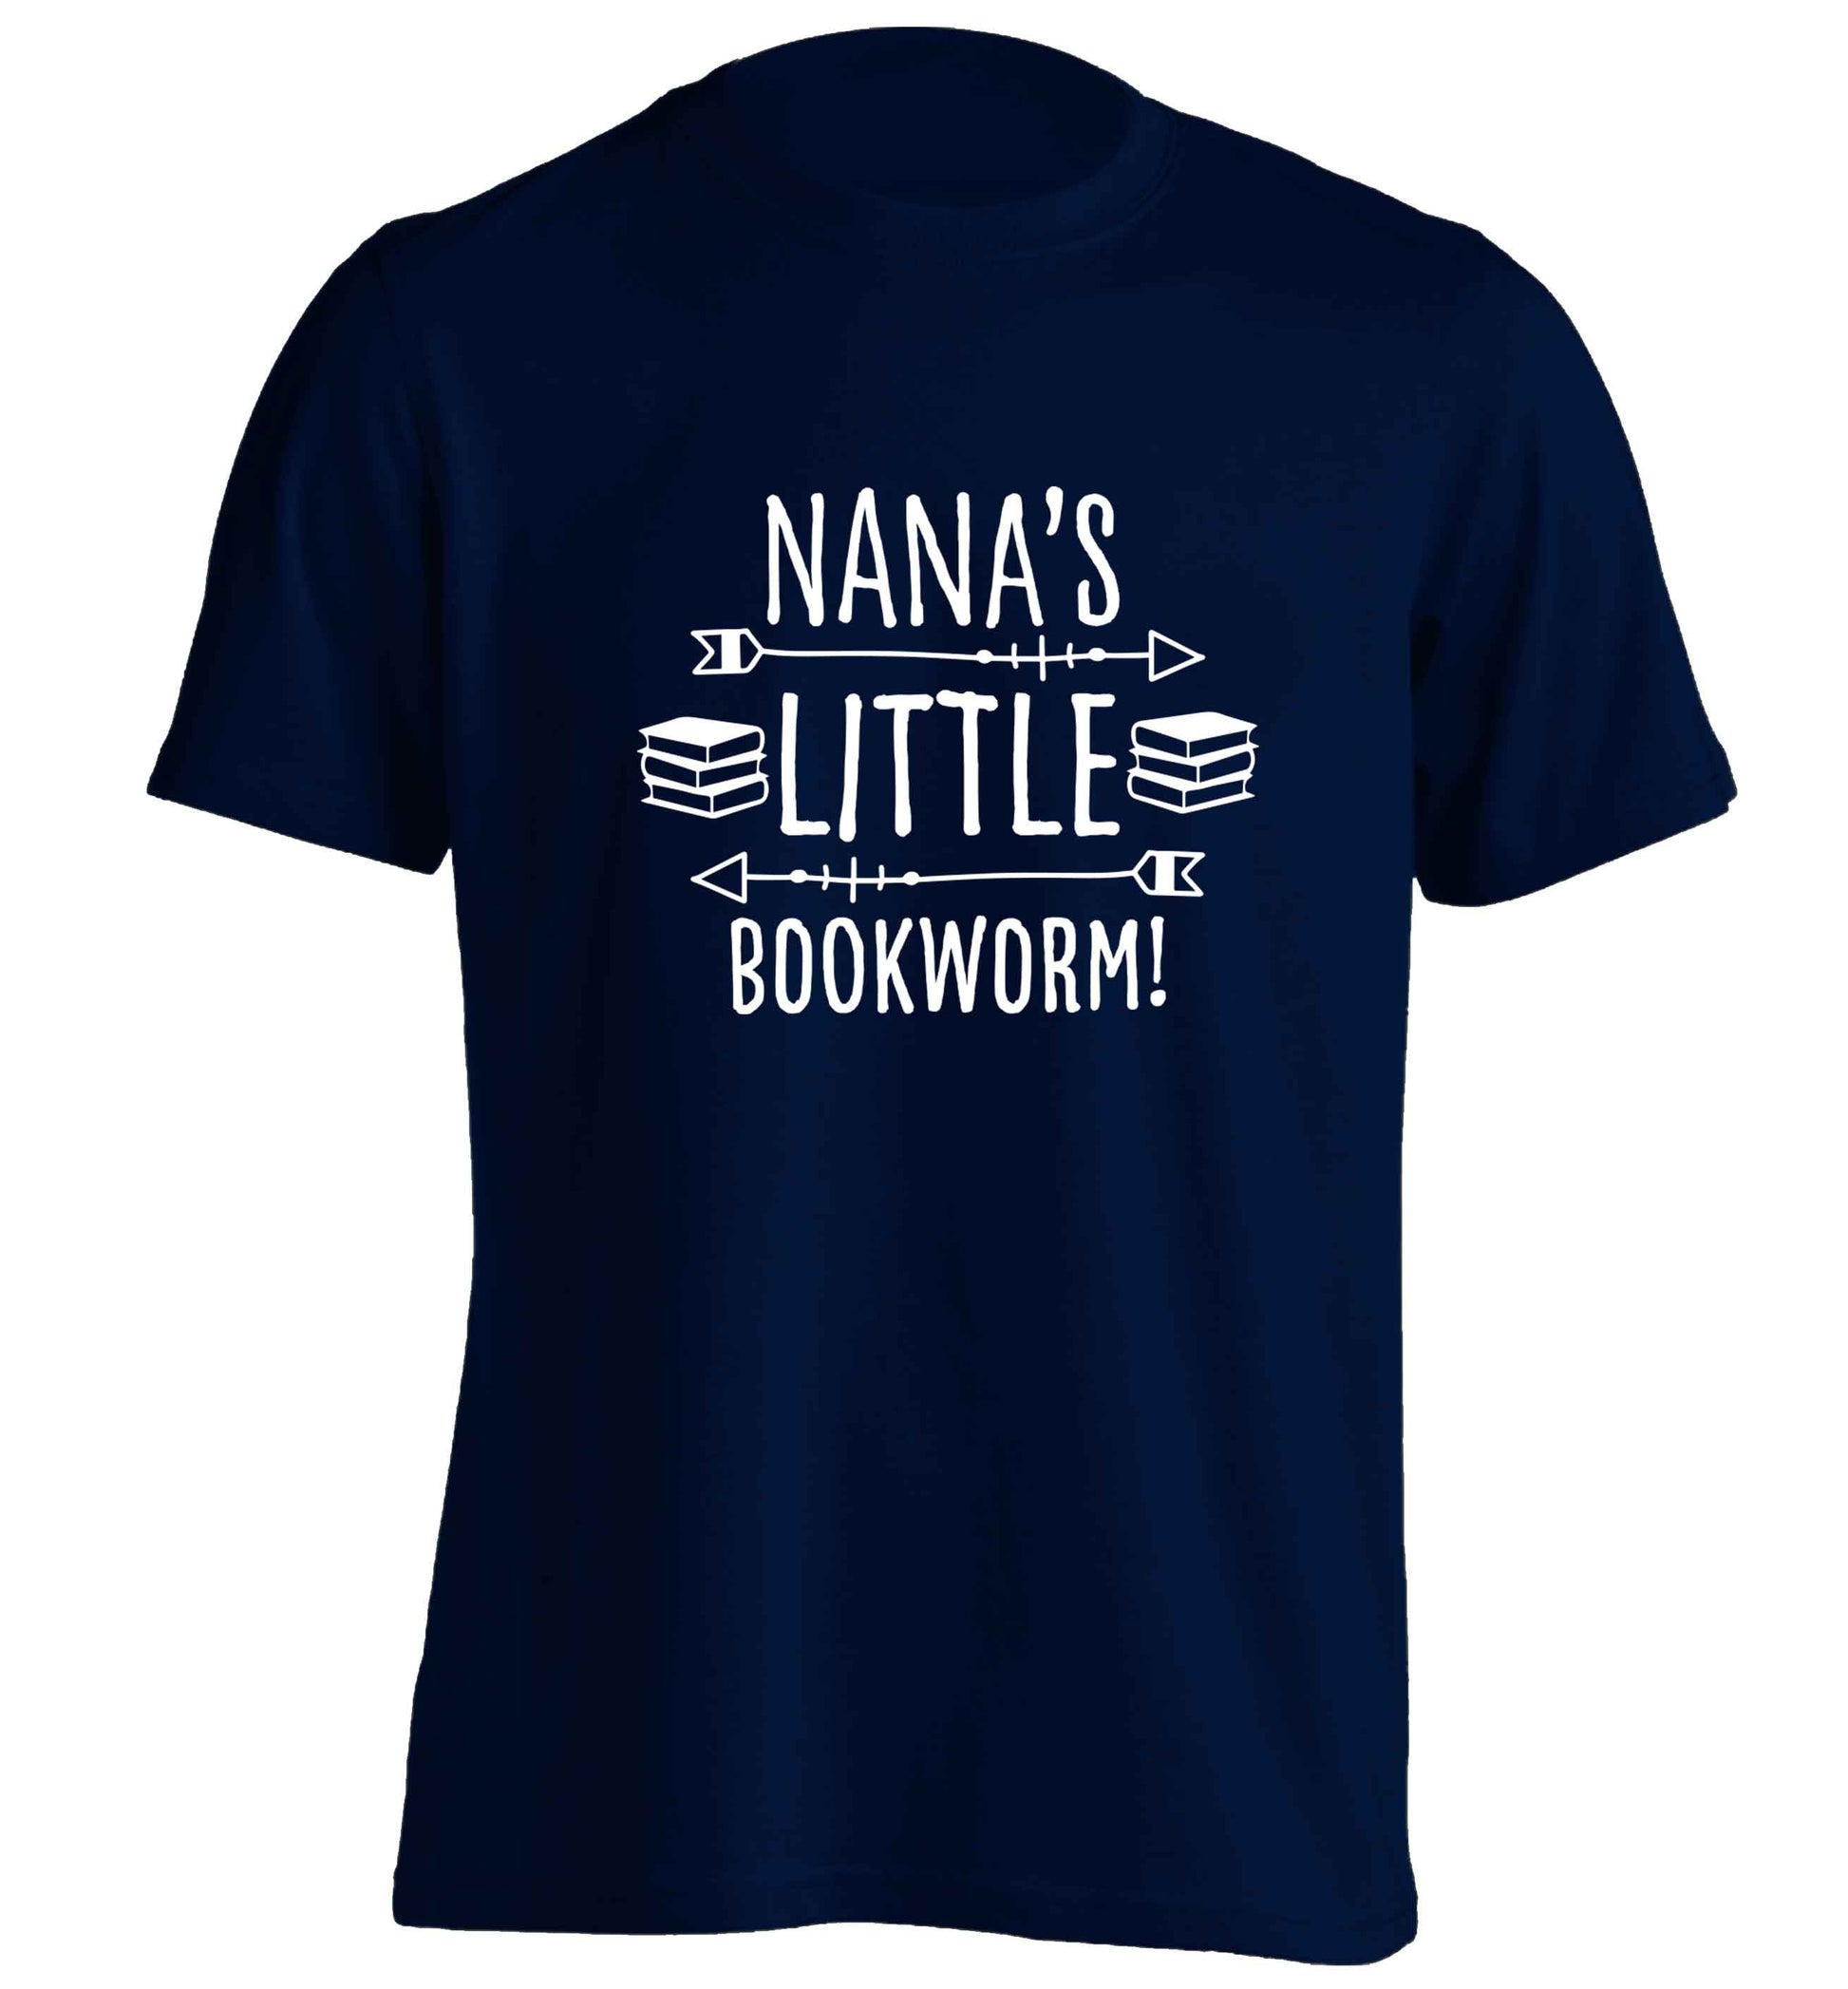 Nana's little bookworm adults unisex navy Tshirt 2XL